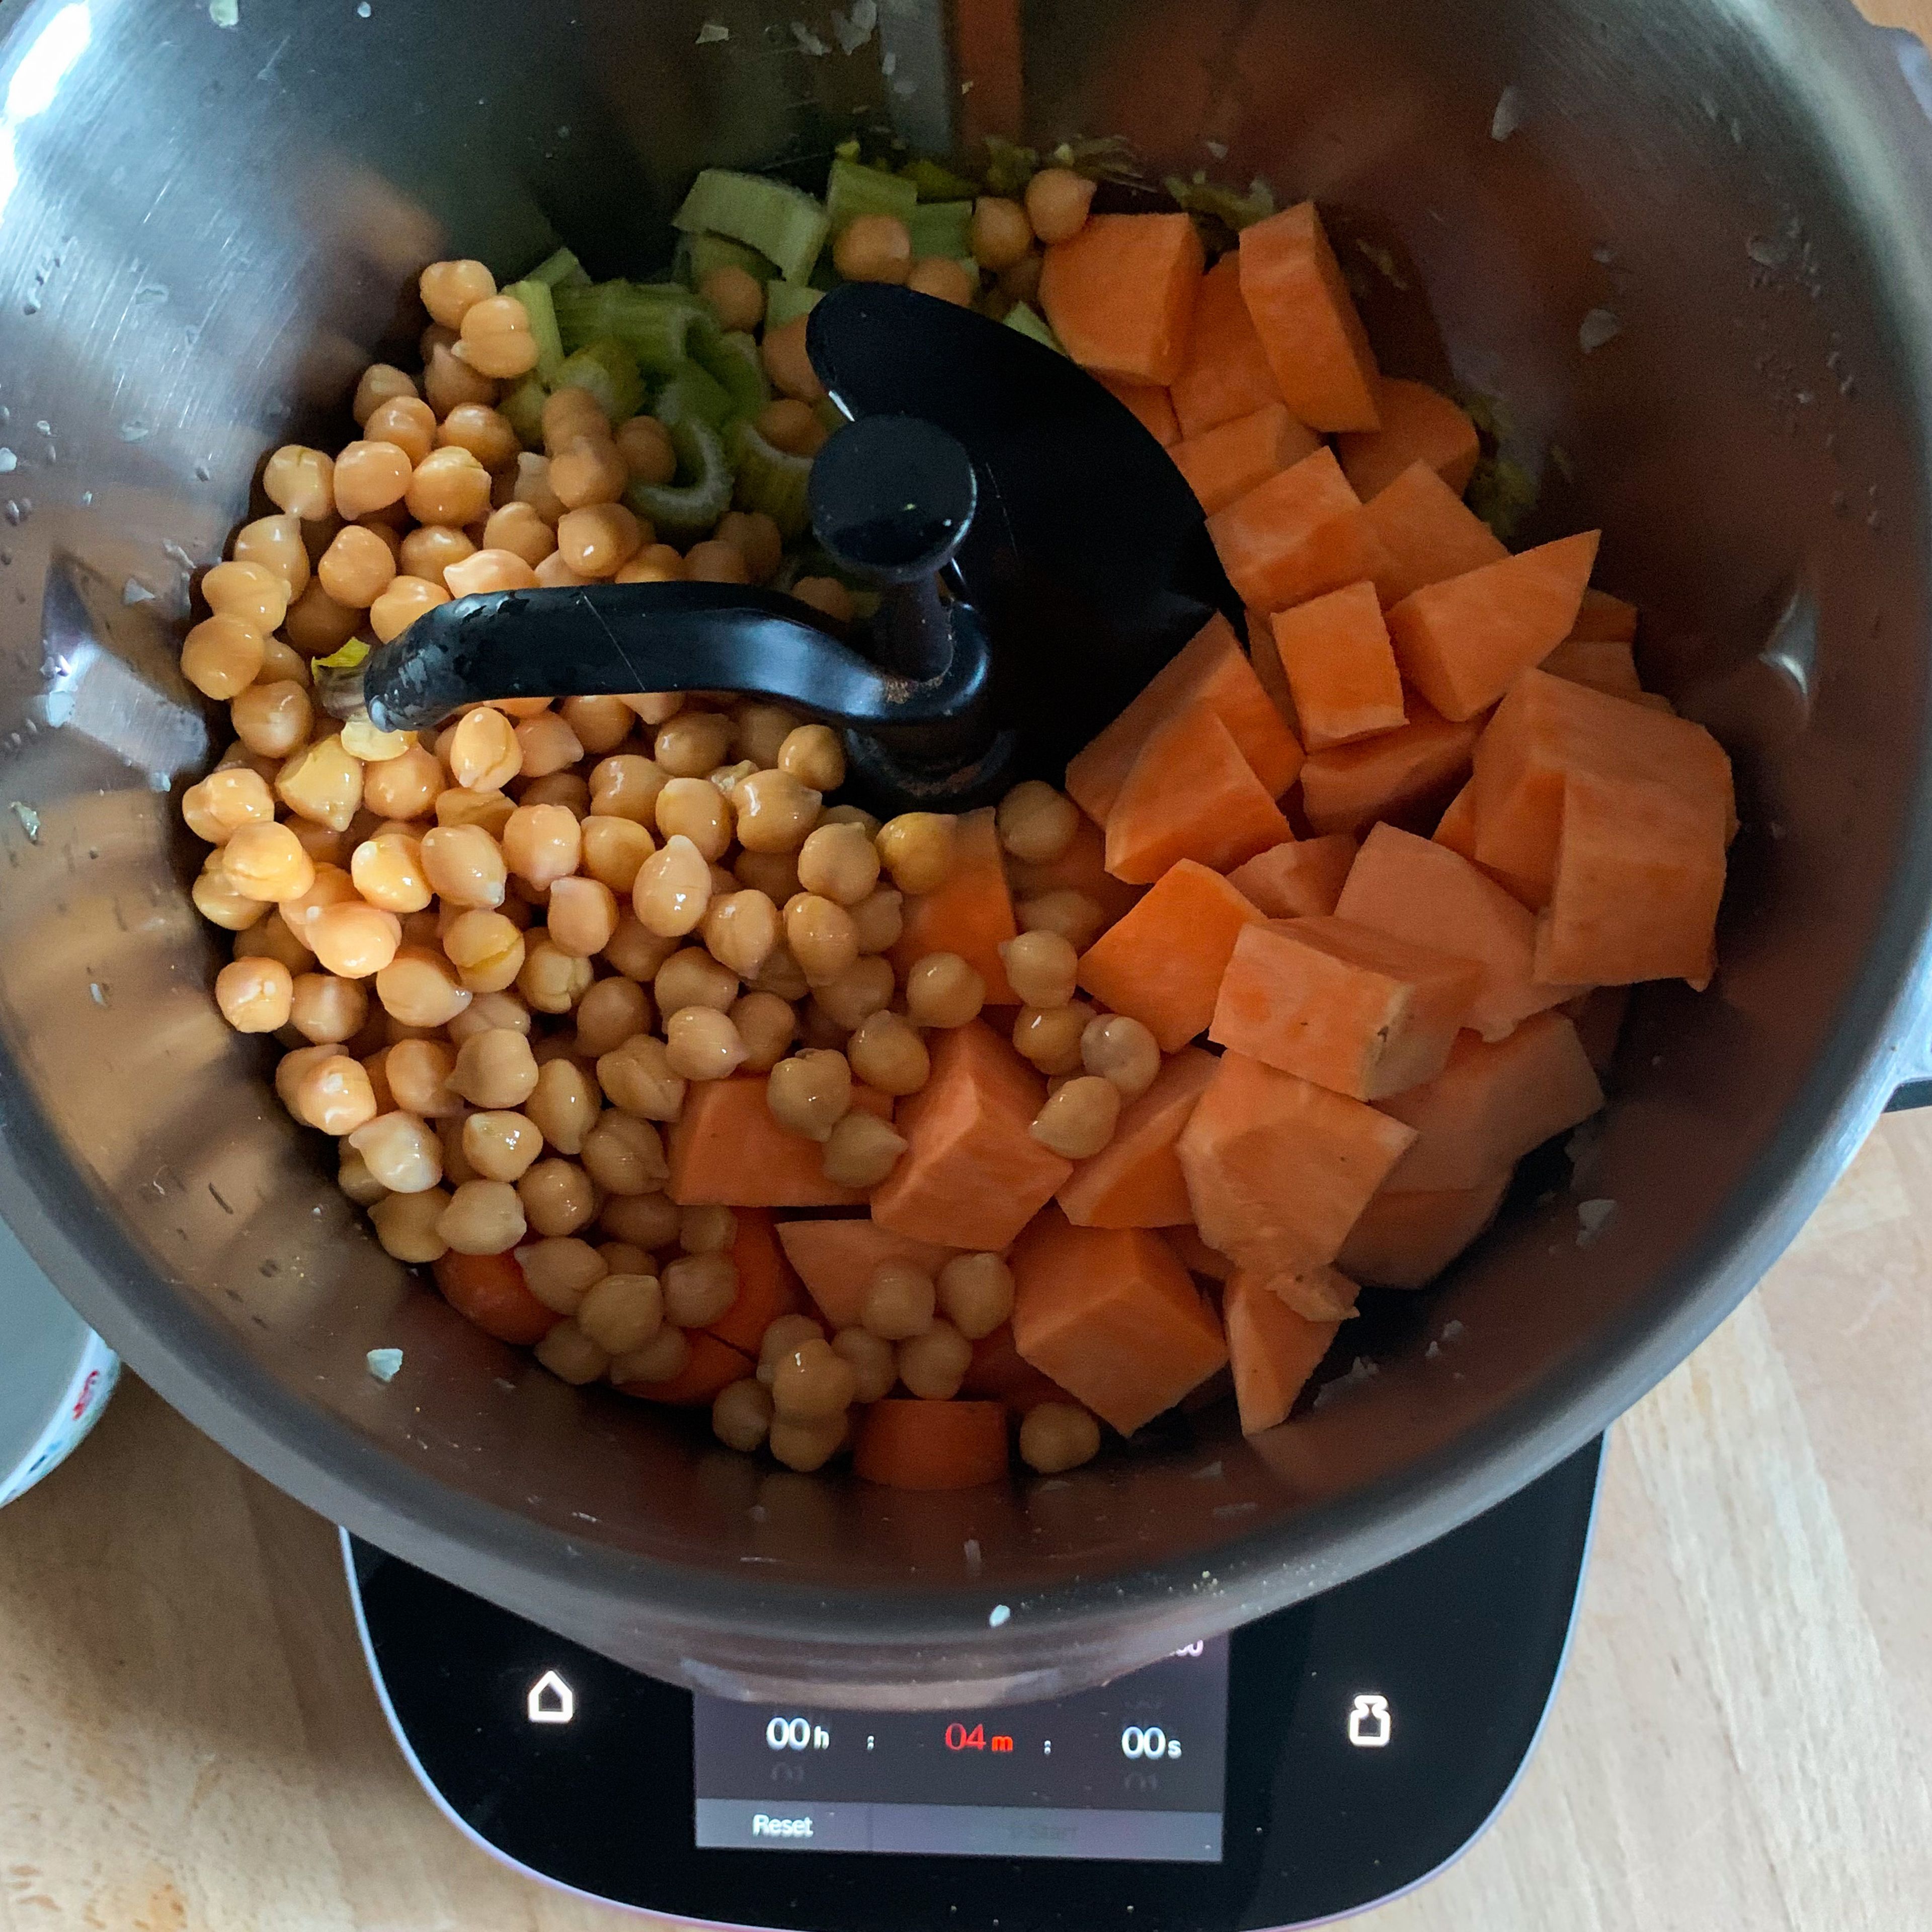 Geschnittenes Gemüse und Kichererbsen in den Cookit geben und bei geschlossenem Deckel anbraten (3D-Rührer I Stufe 3 I 120°C I 4 Minuten). Währenddessen Reis aufsetzen und nach Packungsanleitung kochen. Curry mit stückigen Tomaten aus der Dose und Kokosmilch ablöschen. Mit Salz und Pfeffer würzen und bei geschlossenem Deckel köcheln lassen (3D-Rührer I Stufe 2 I 95°C I 15 Minuten).